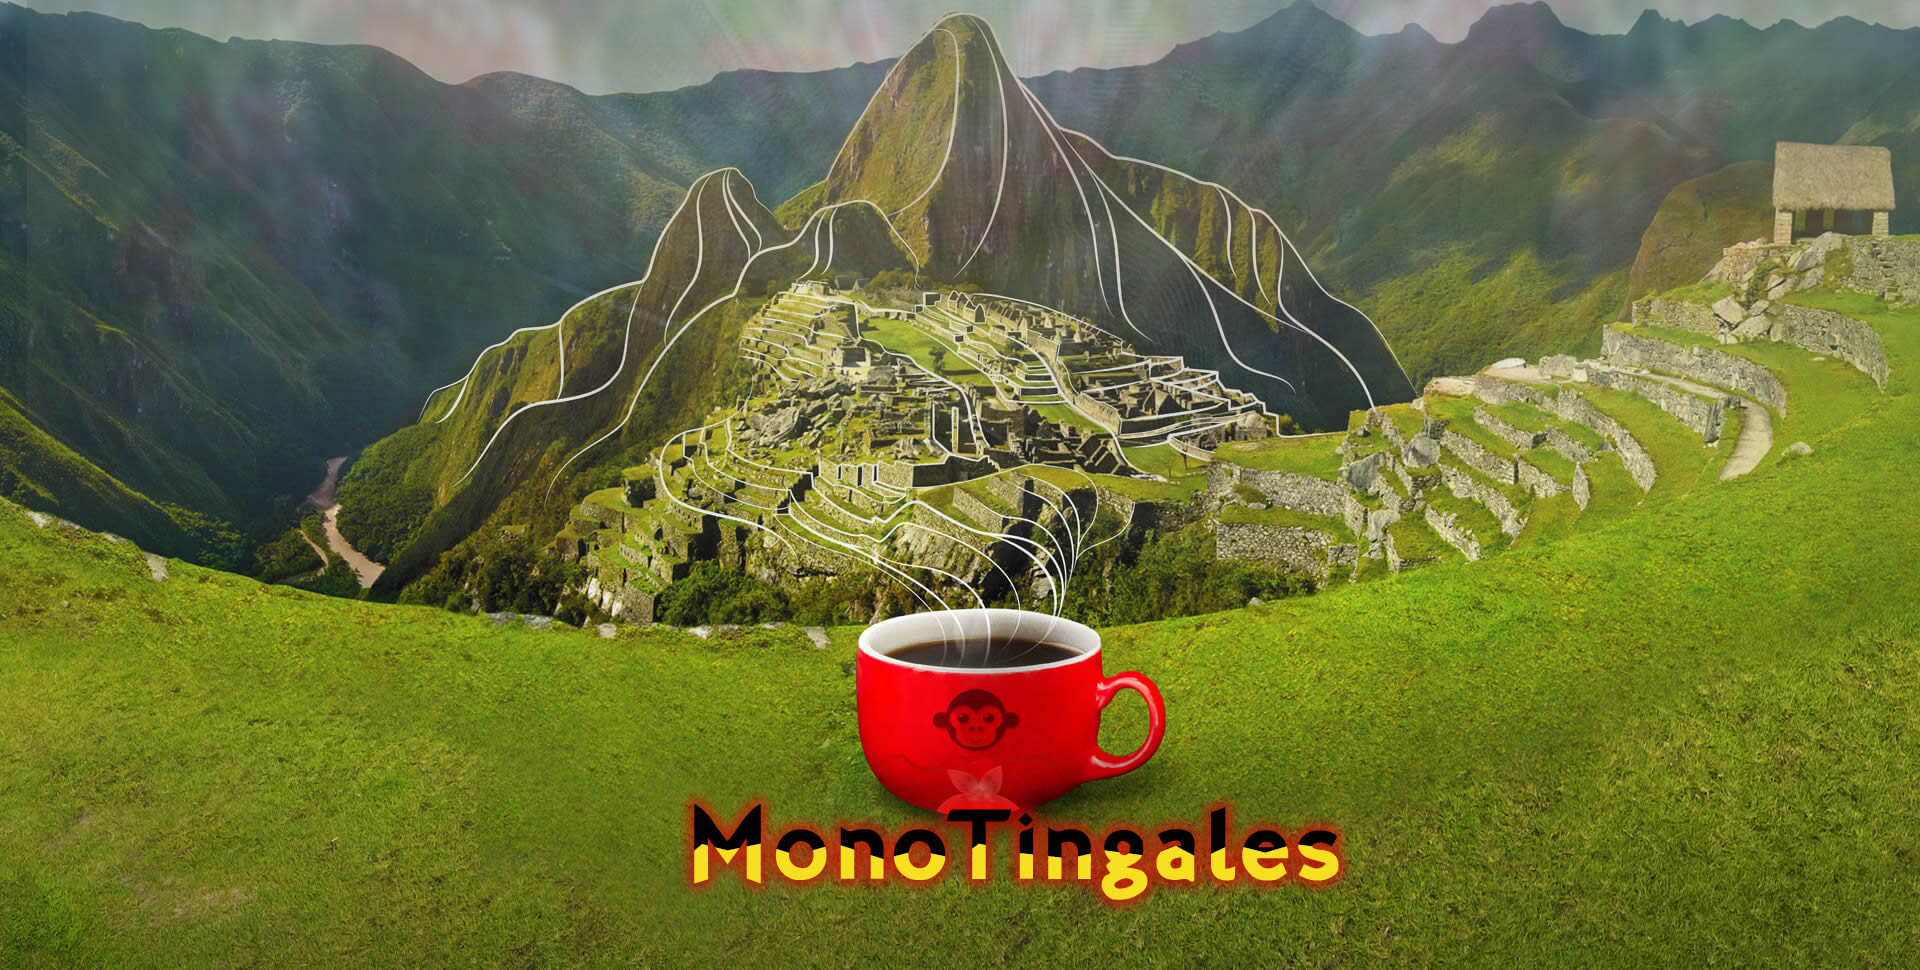 Café Gourmet Mono Tingales